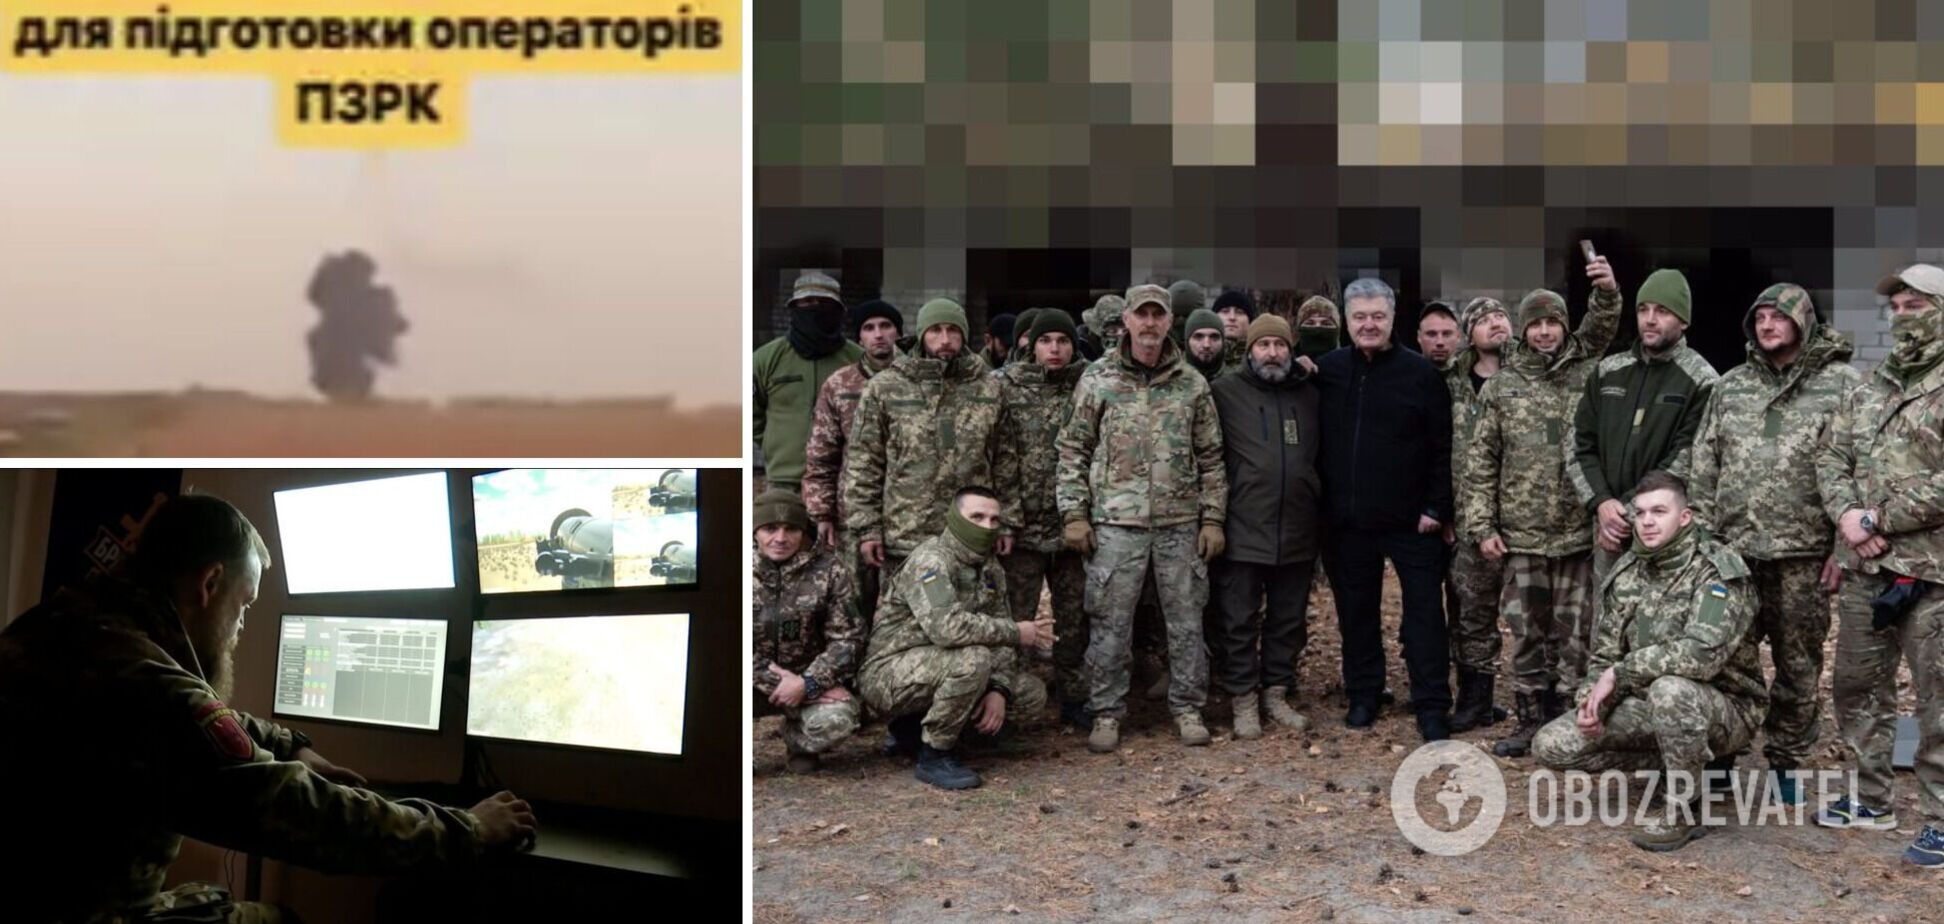 Сбили вражескую 'Сушку': Порошенко показал уничтожение российского самолета бойцами УДА Видео